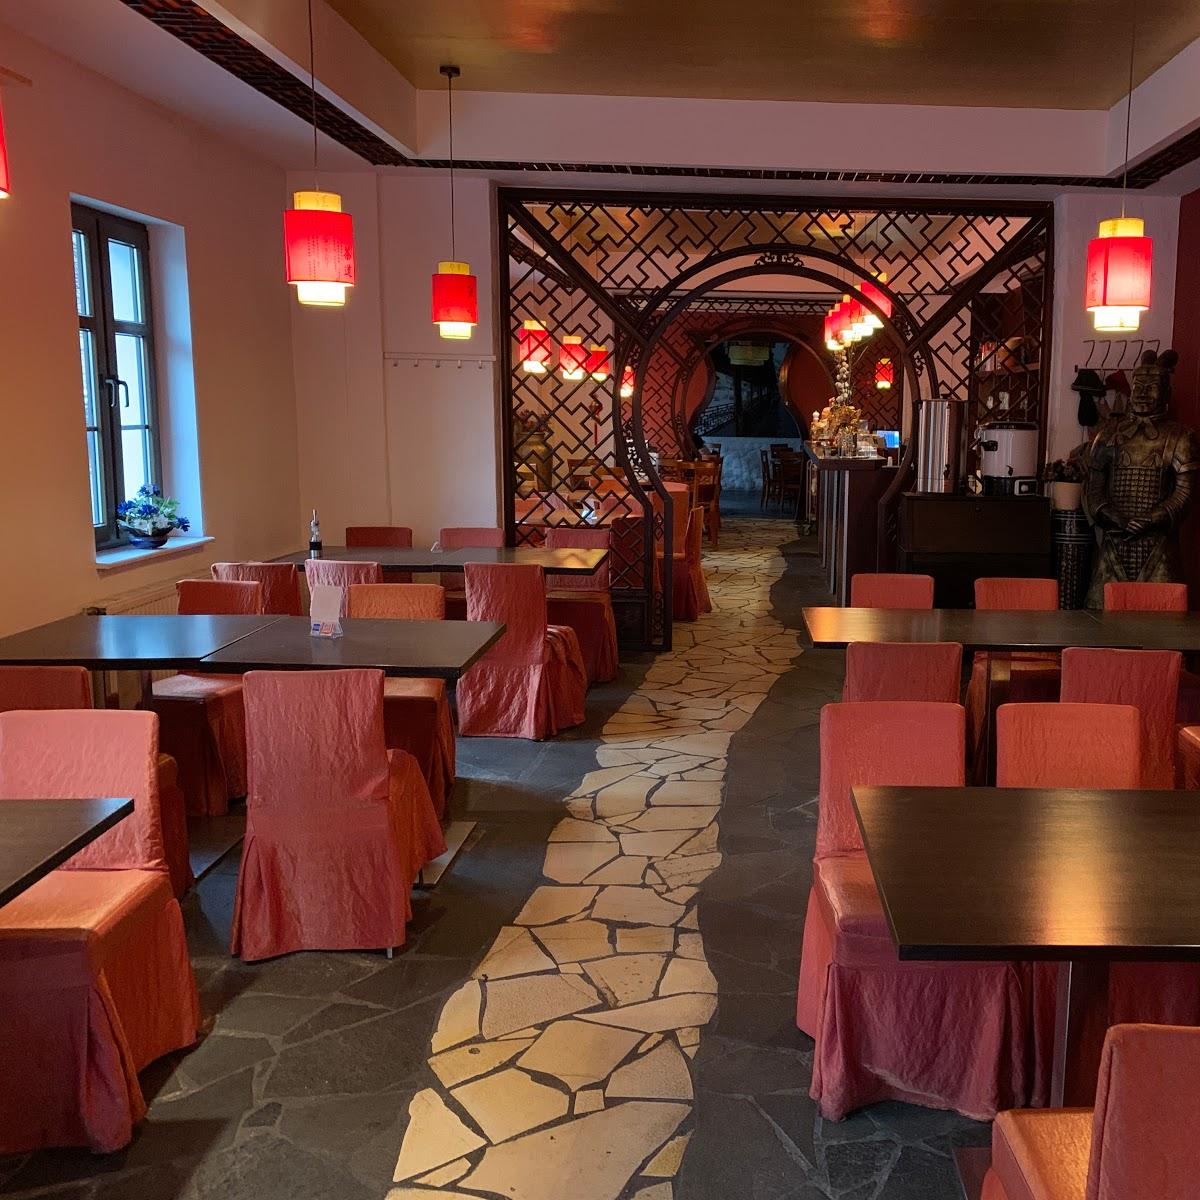 Restaurant "Lao Xiang" in Berlin